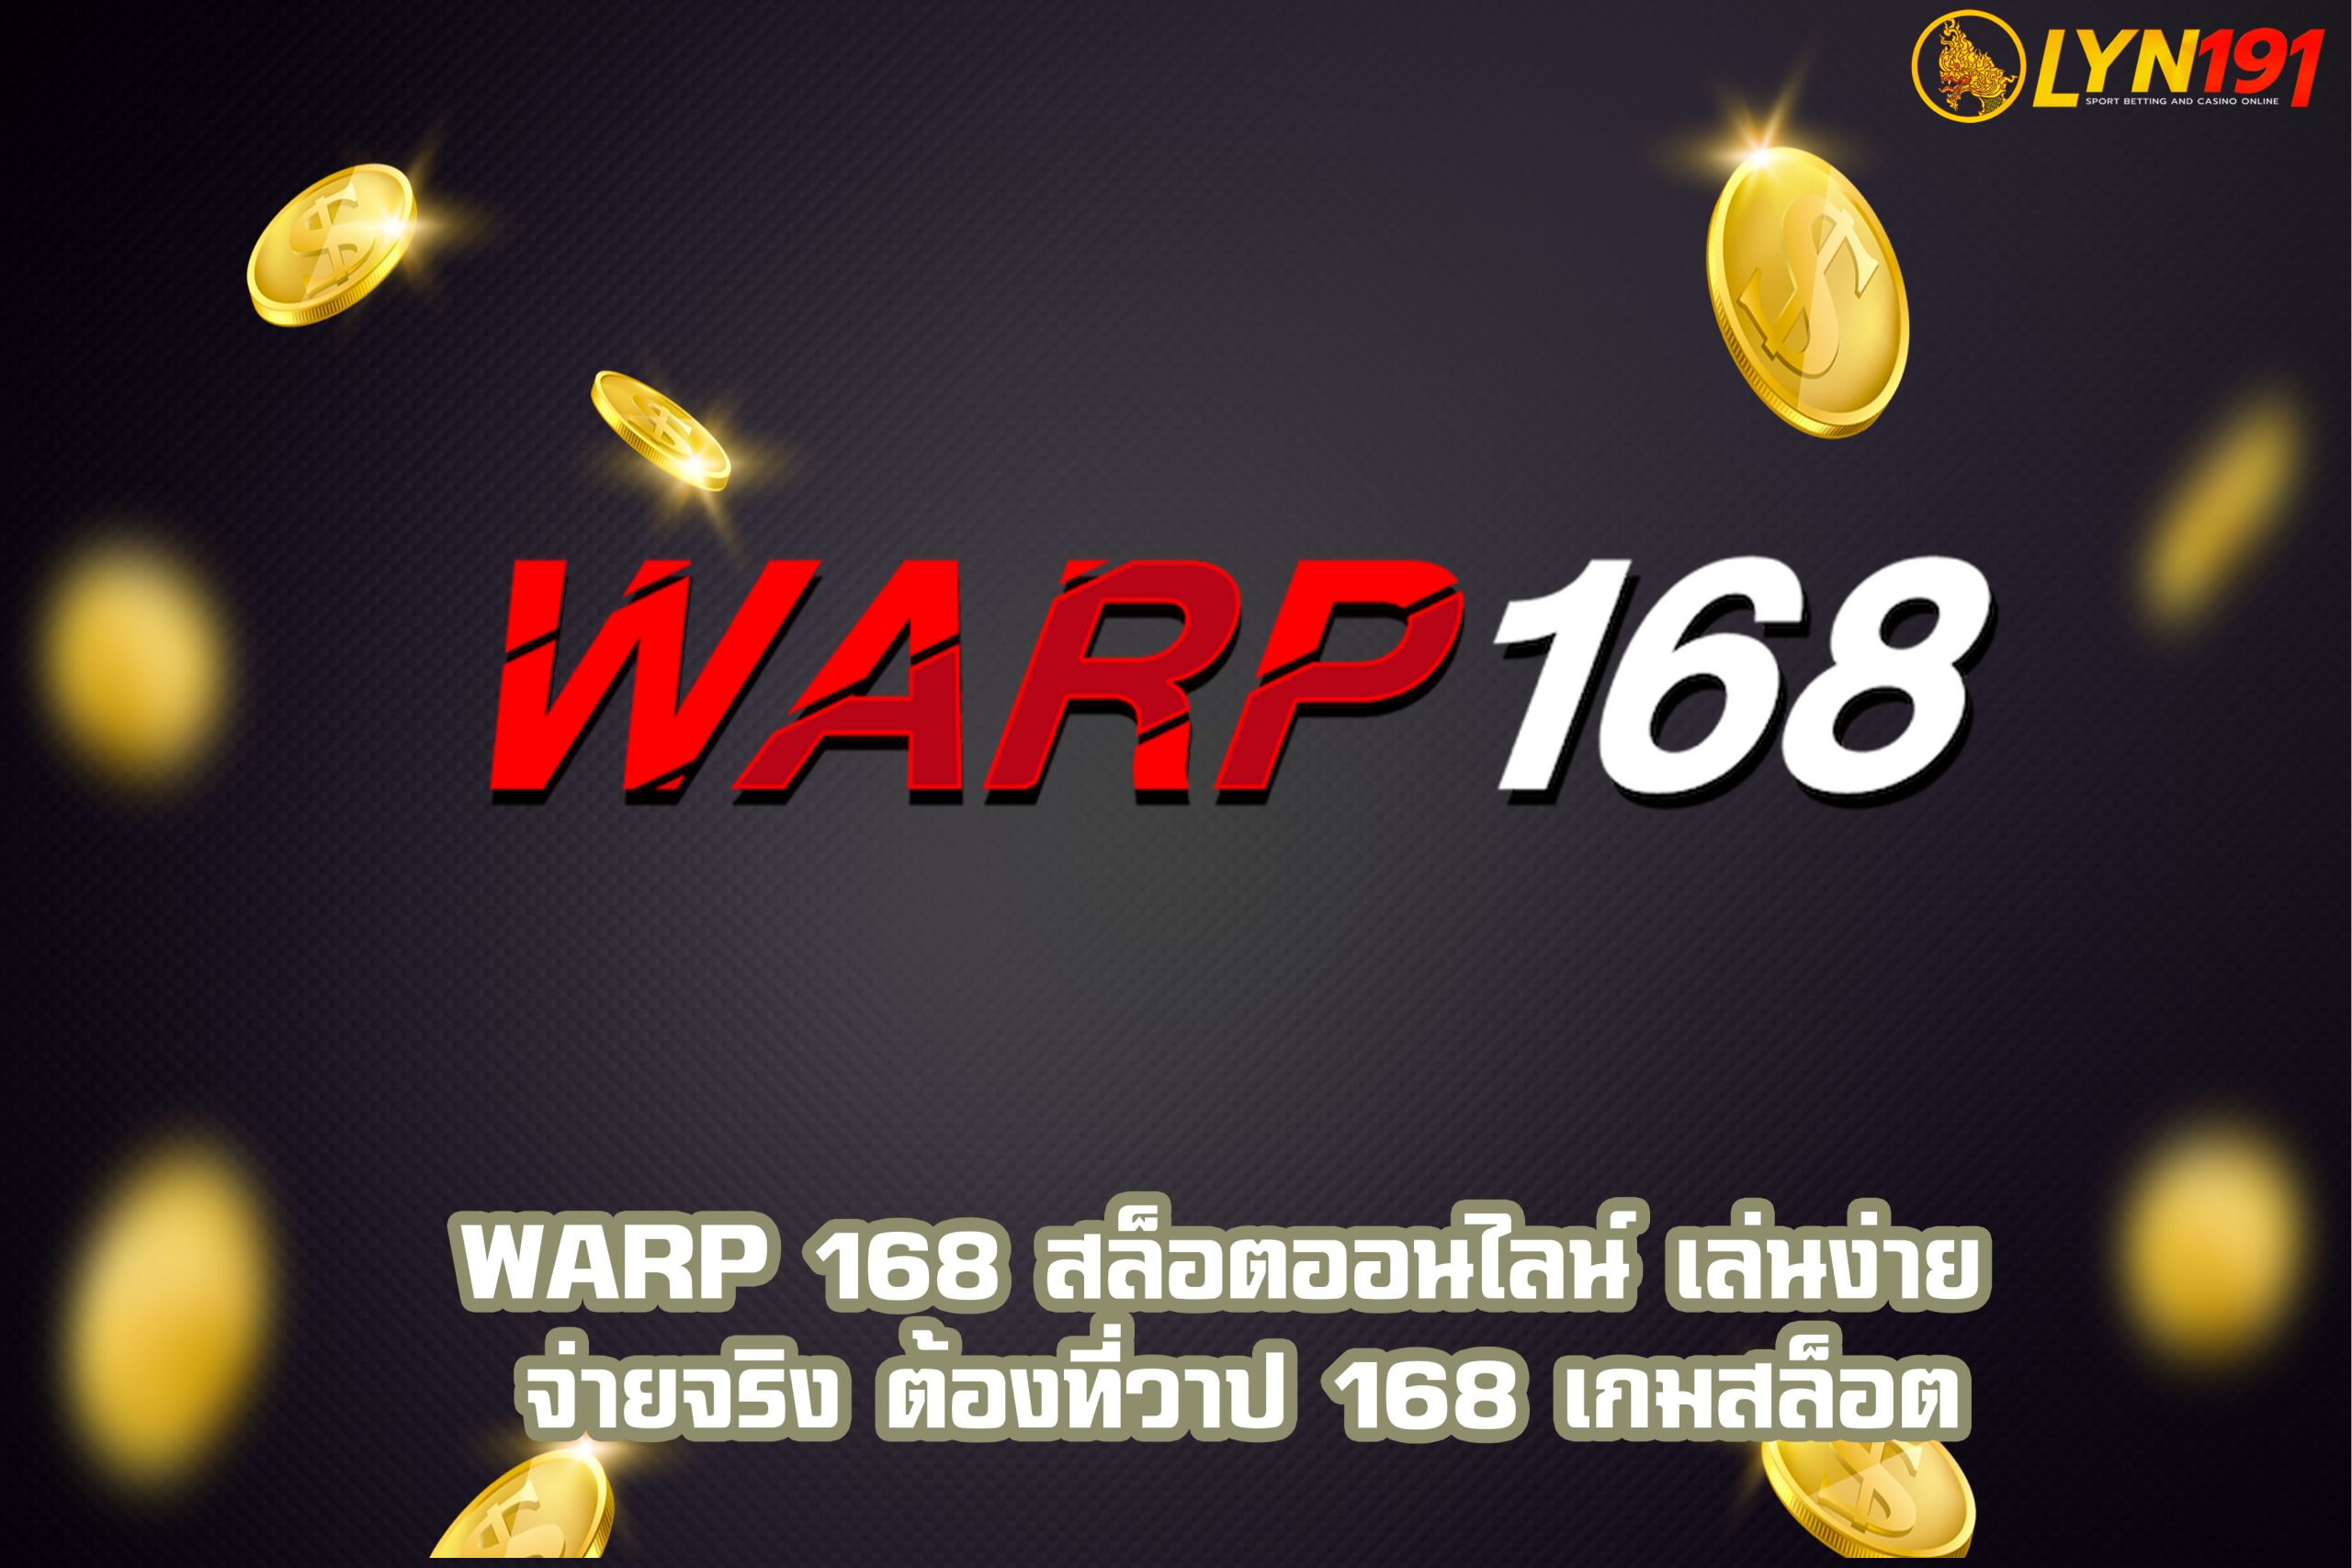 WARP 168 สล็อตออนไลน์ เล่นง่าย จ่ายจริง ต้องที่วาป 168 เกมสล็อต